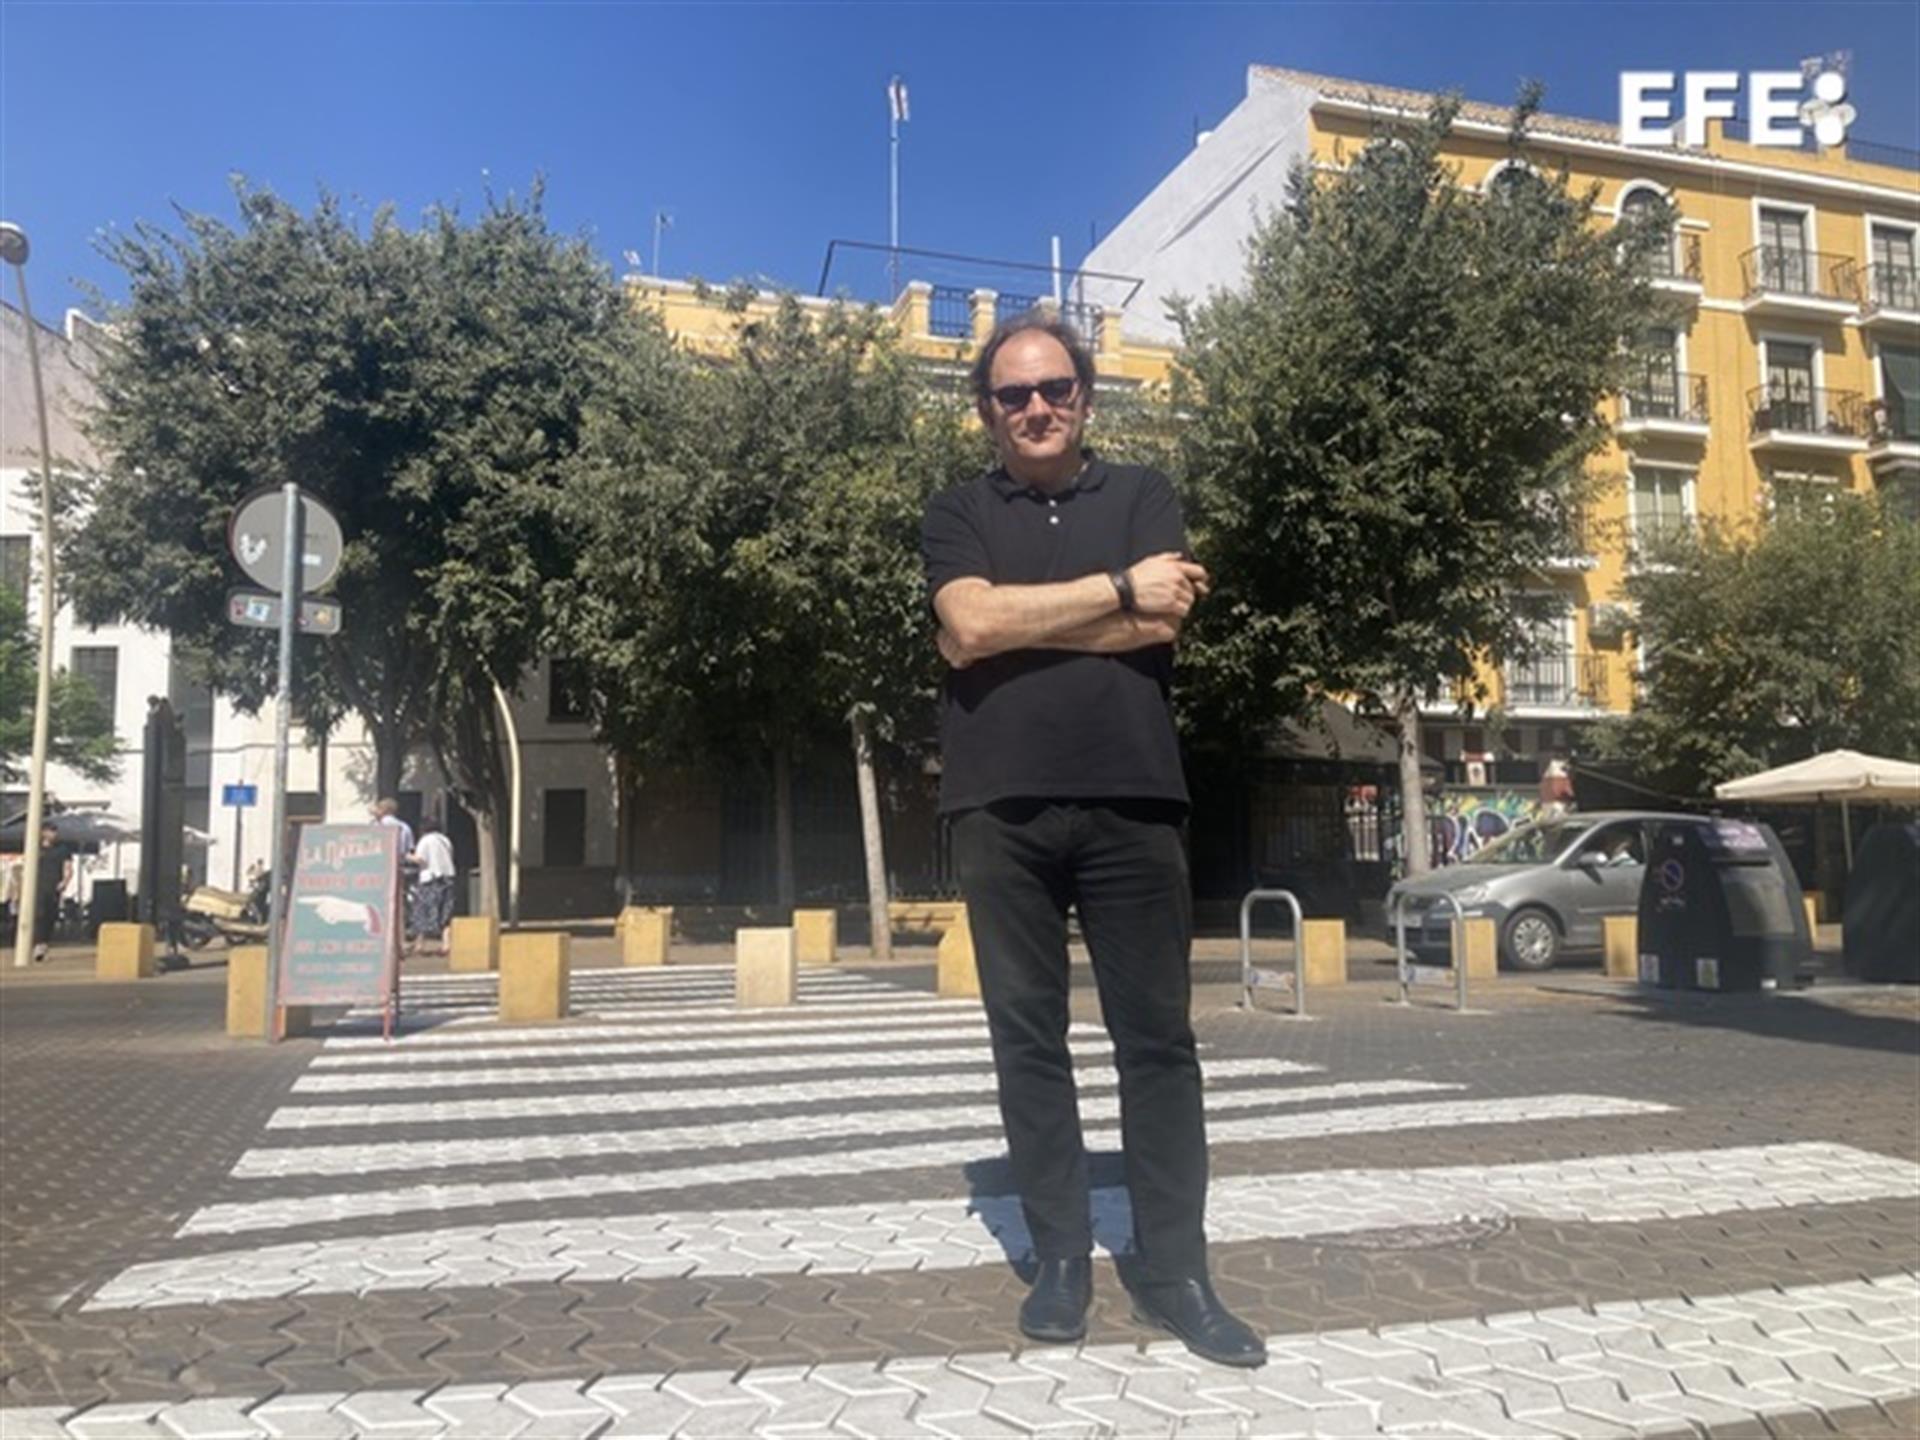 Columnista de varios diarios nacionales y editor Carlos Mármol, posa durante una entrevista para EFE en Sevilla.EFE/Alfredo Valenzuela